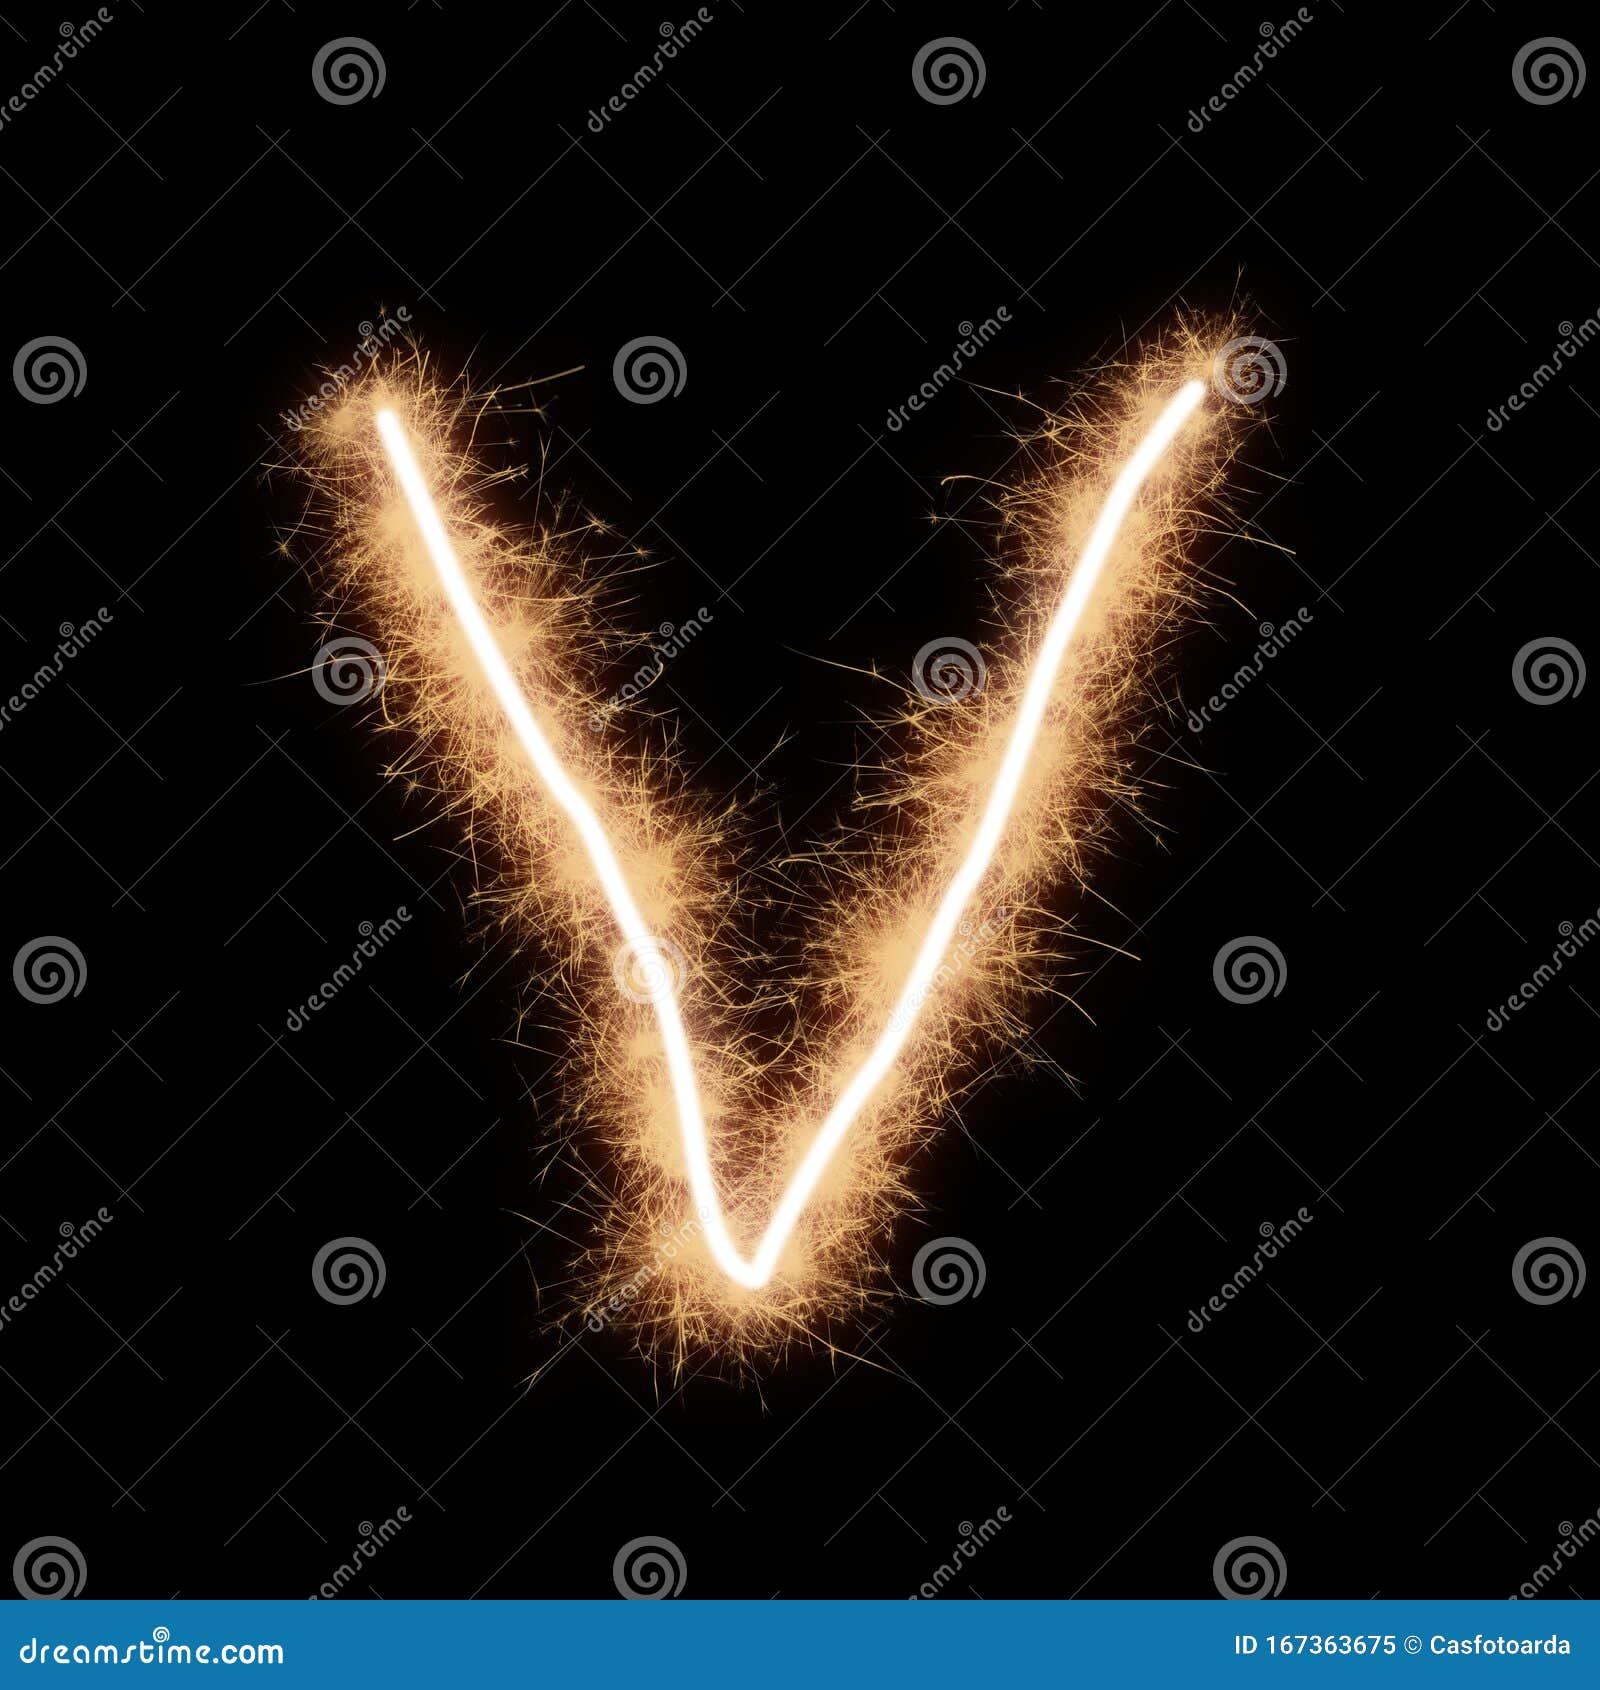 Lower Case V Letter of Alphabet on a Black Background Stock Image - Image  of blaze, sign: 167363675